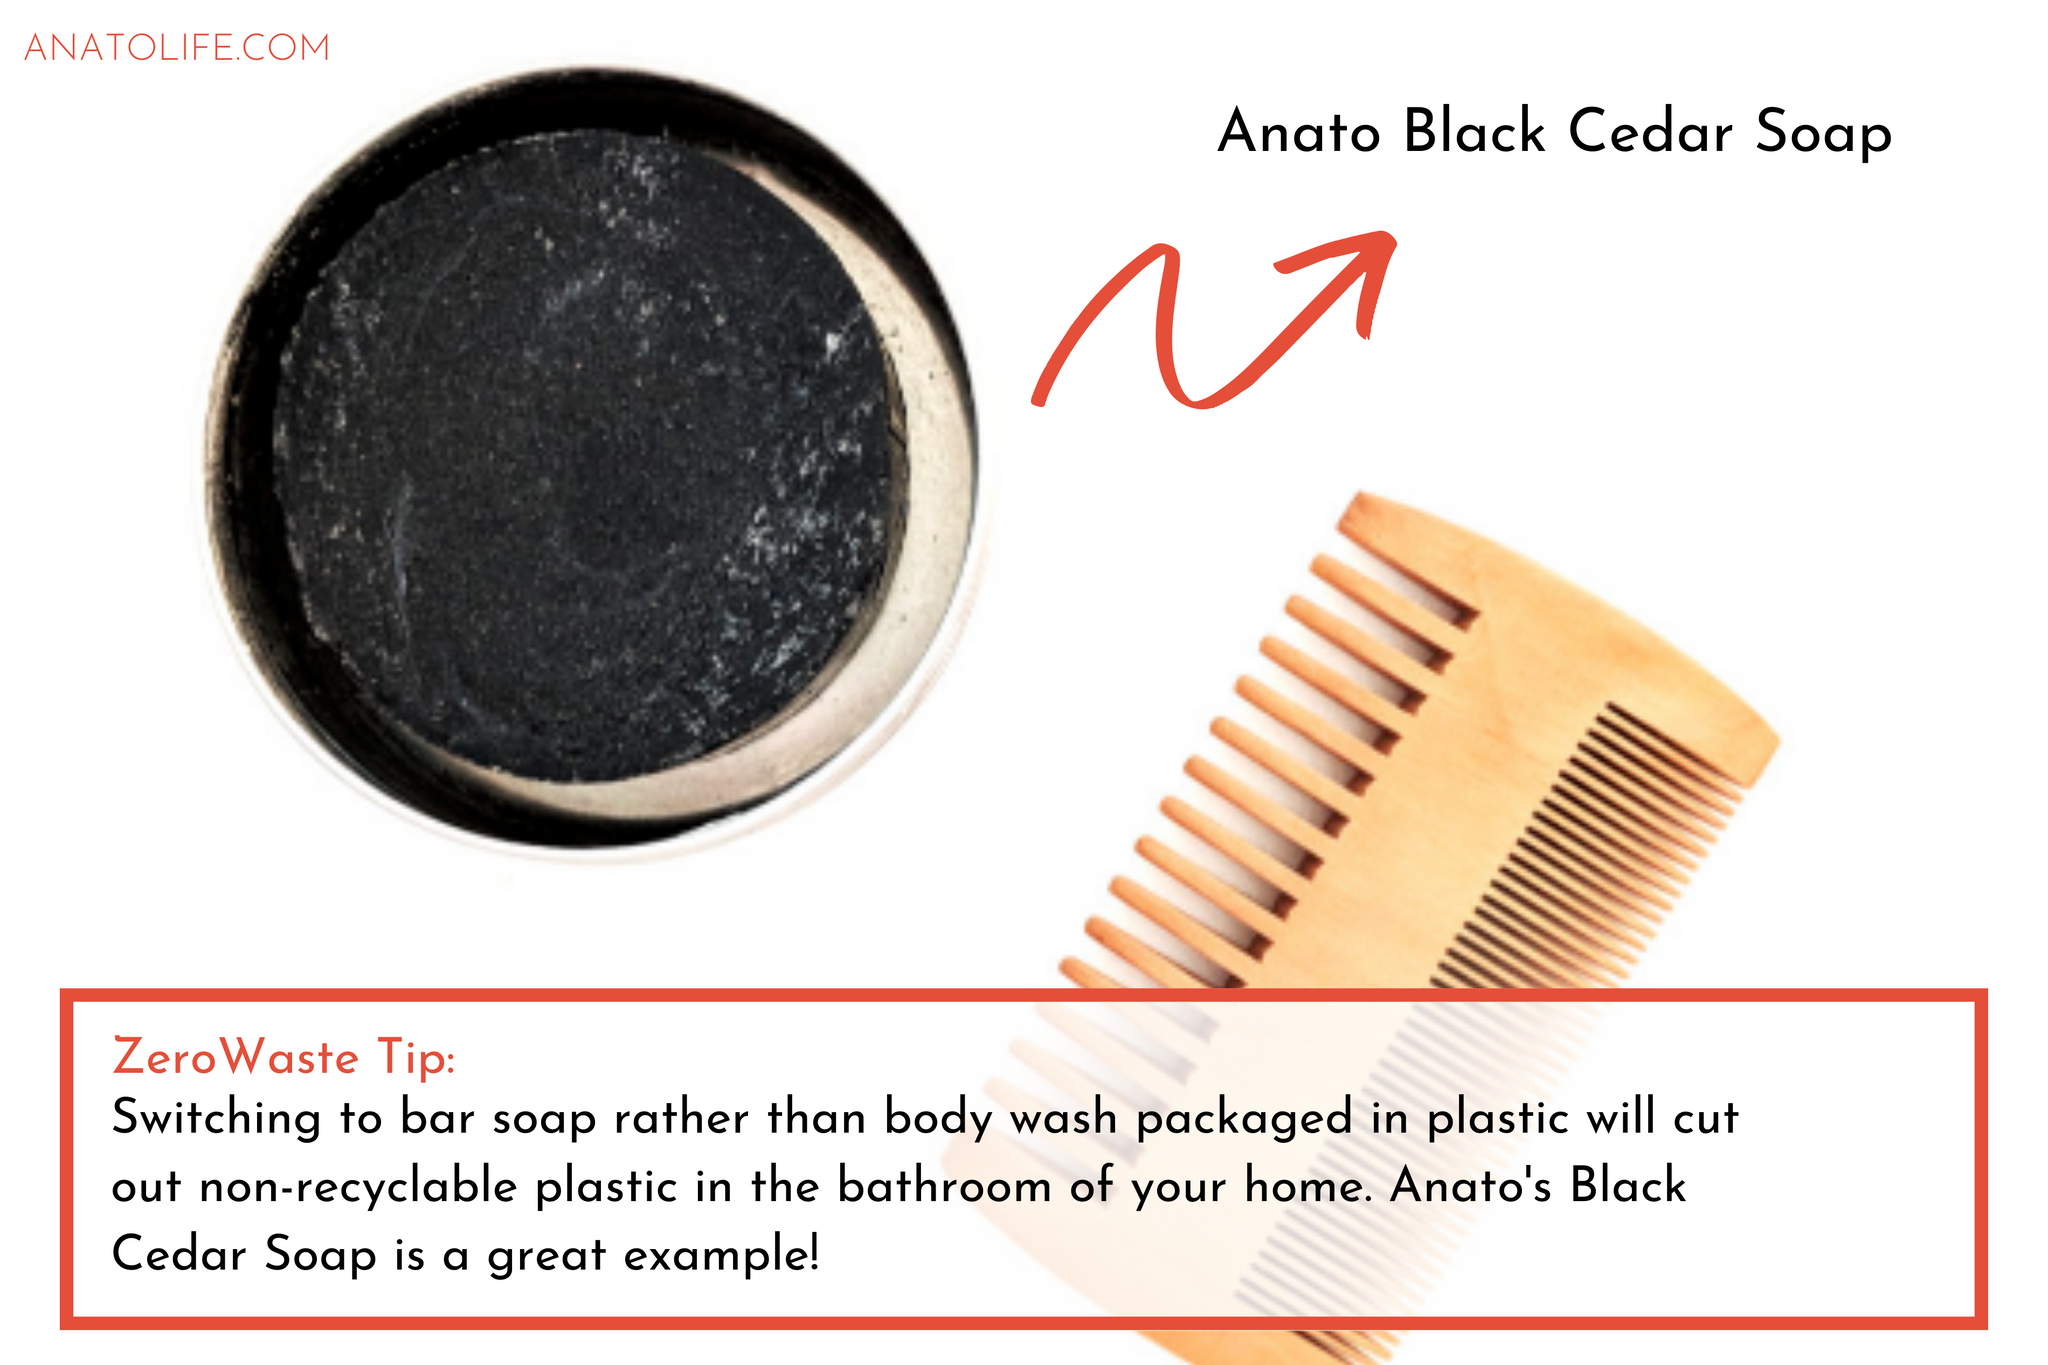 Anato Black Cedar Soap | ANATO LIFE regenerative_zero waste skincare from trees